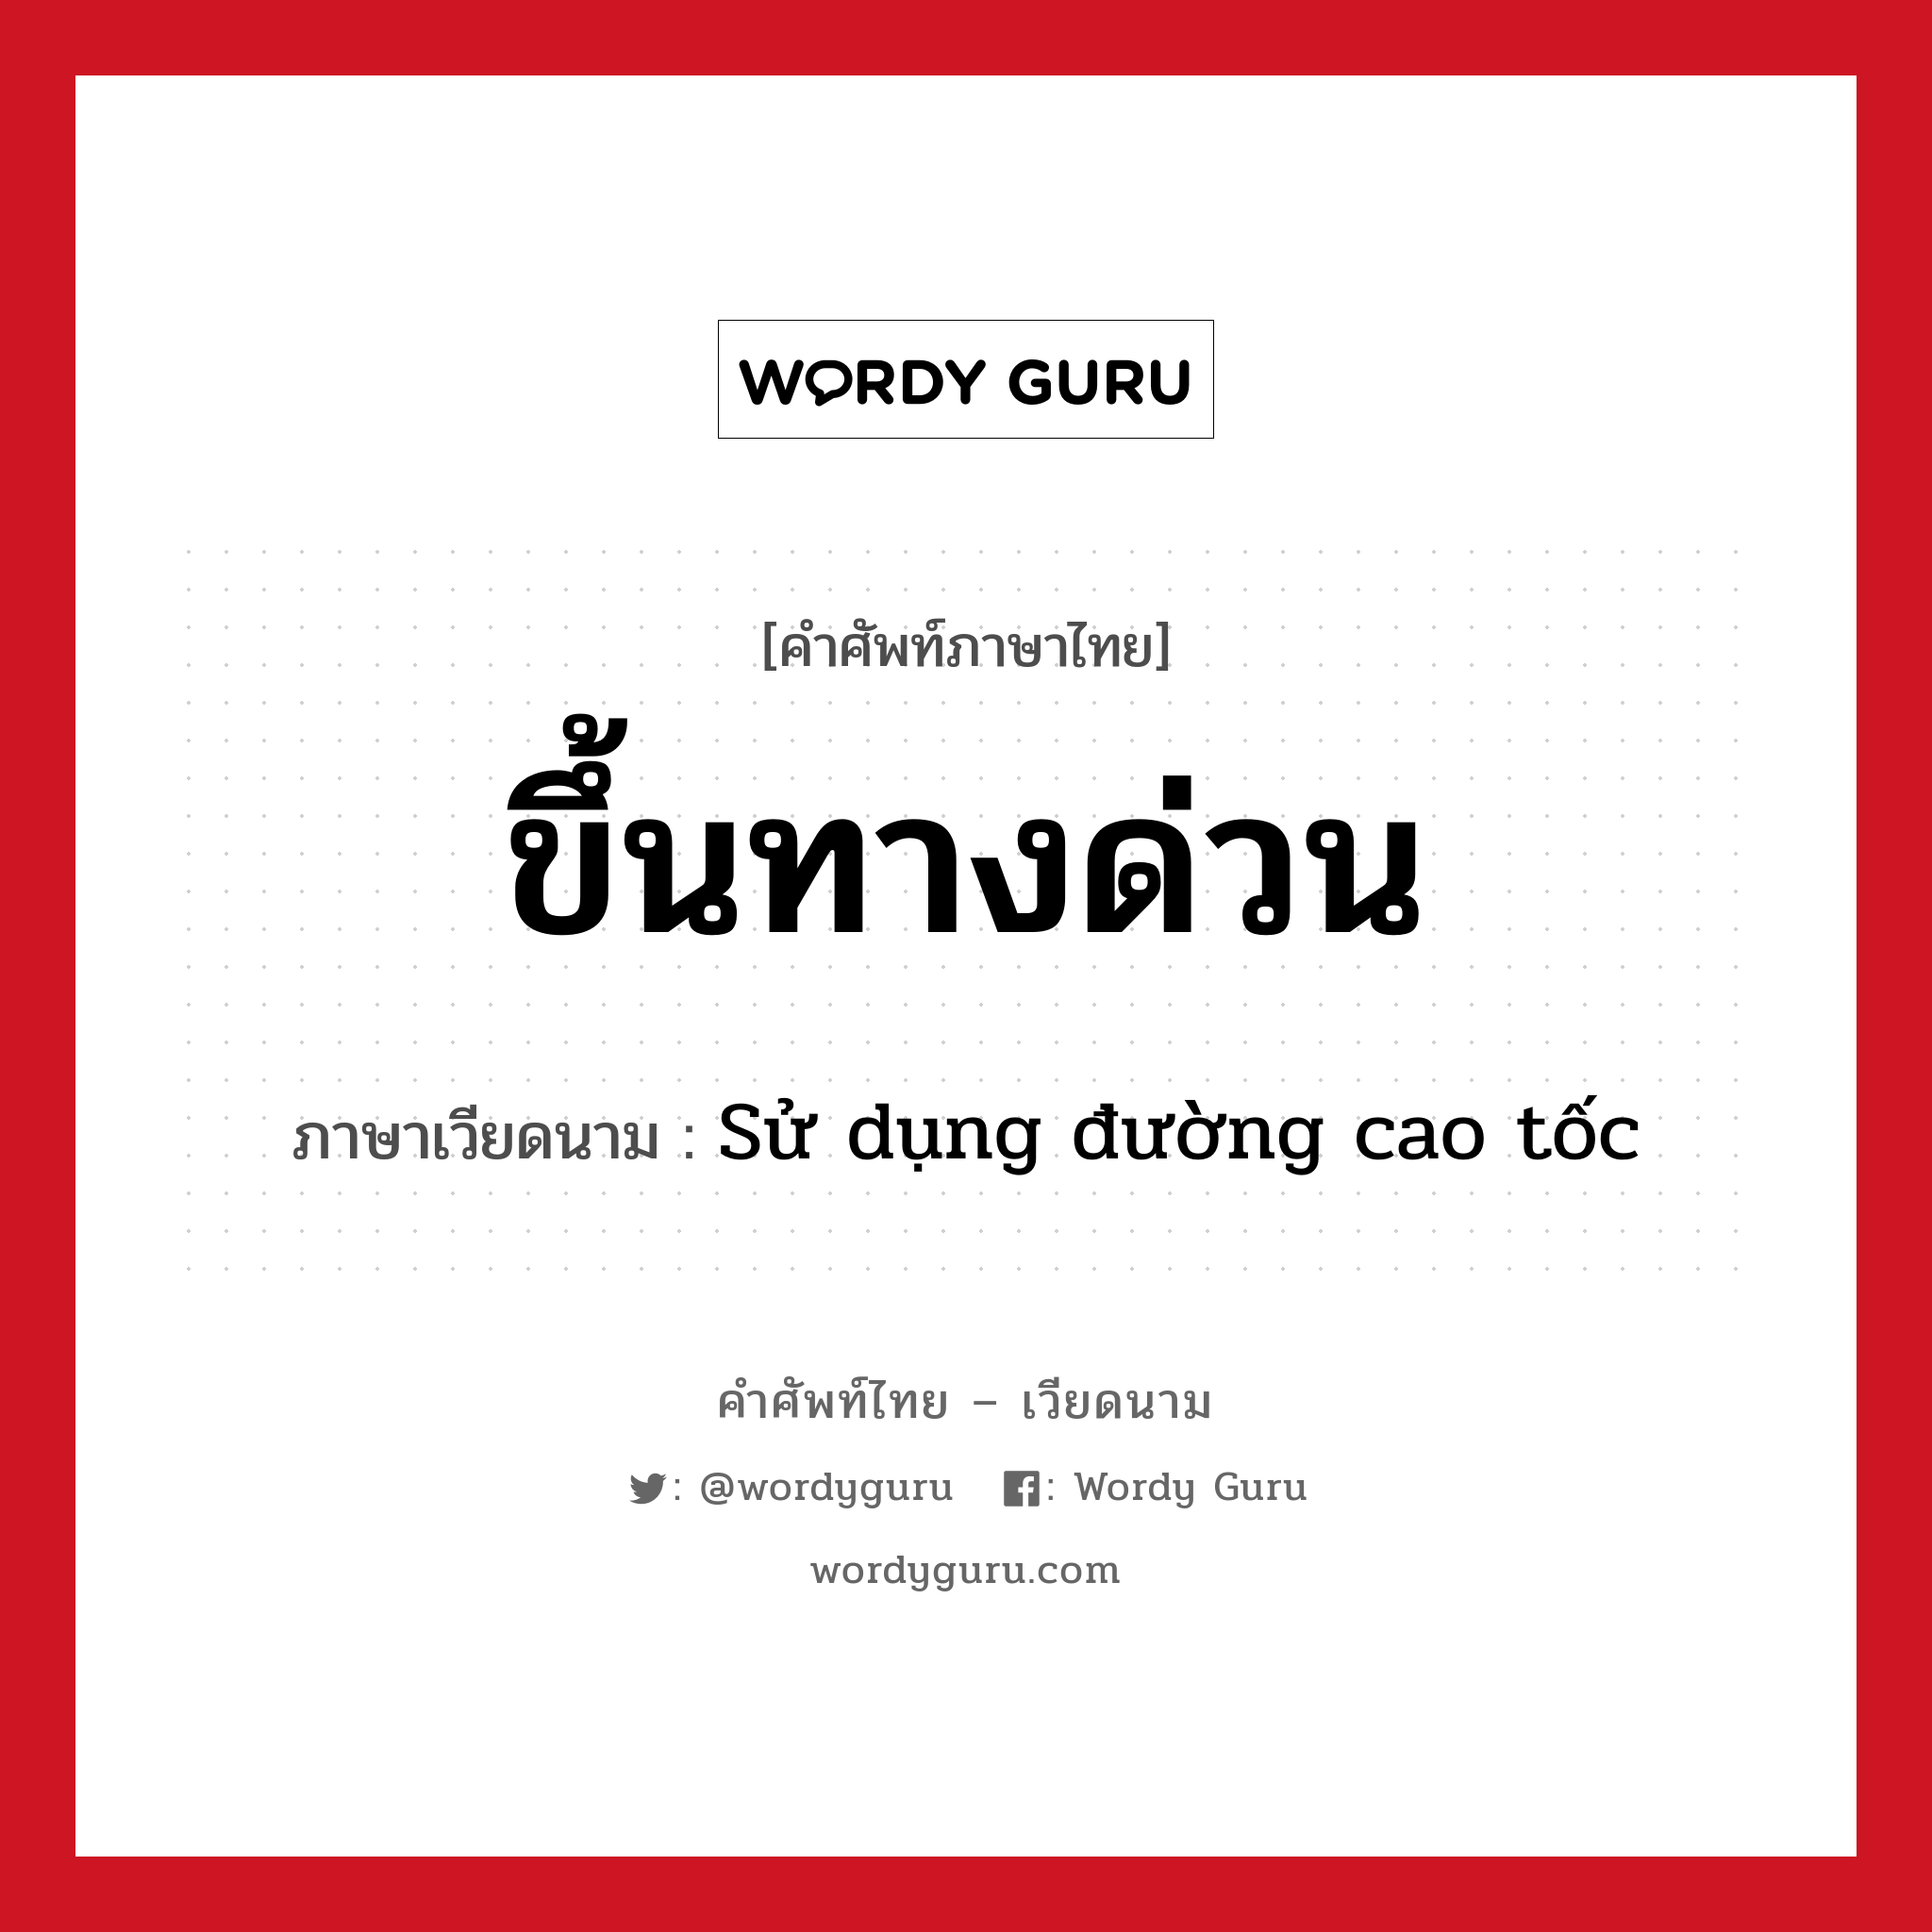 ขึ้นทางด่วน ภาษาเวียดนามคืออะไร, คำศัพท์ภาษาไทย - เวียดนาม ขึ้นทางด่วน ภาษาเวียดนาม Sử dụng đường cao tốc หมวด การเดินทาง หมวด การเดินทาง